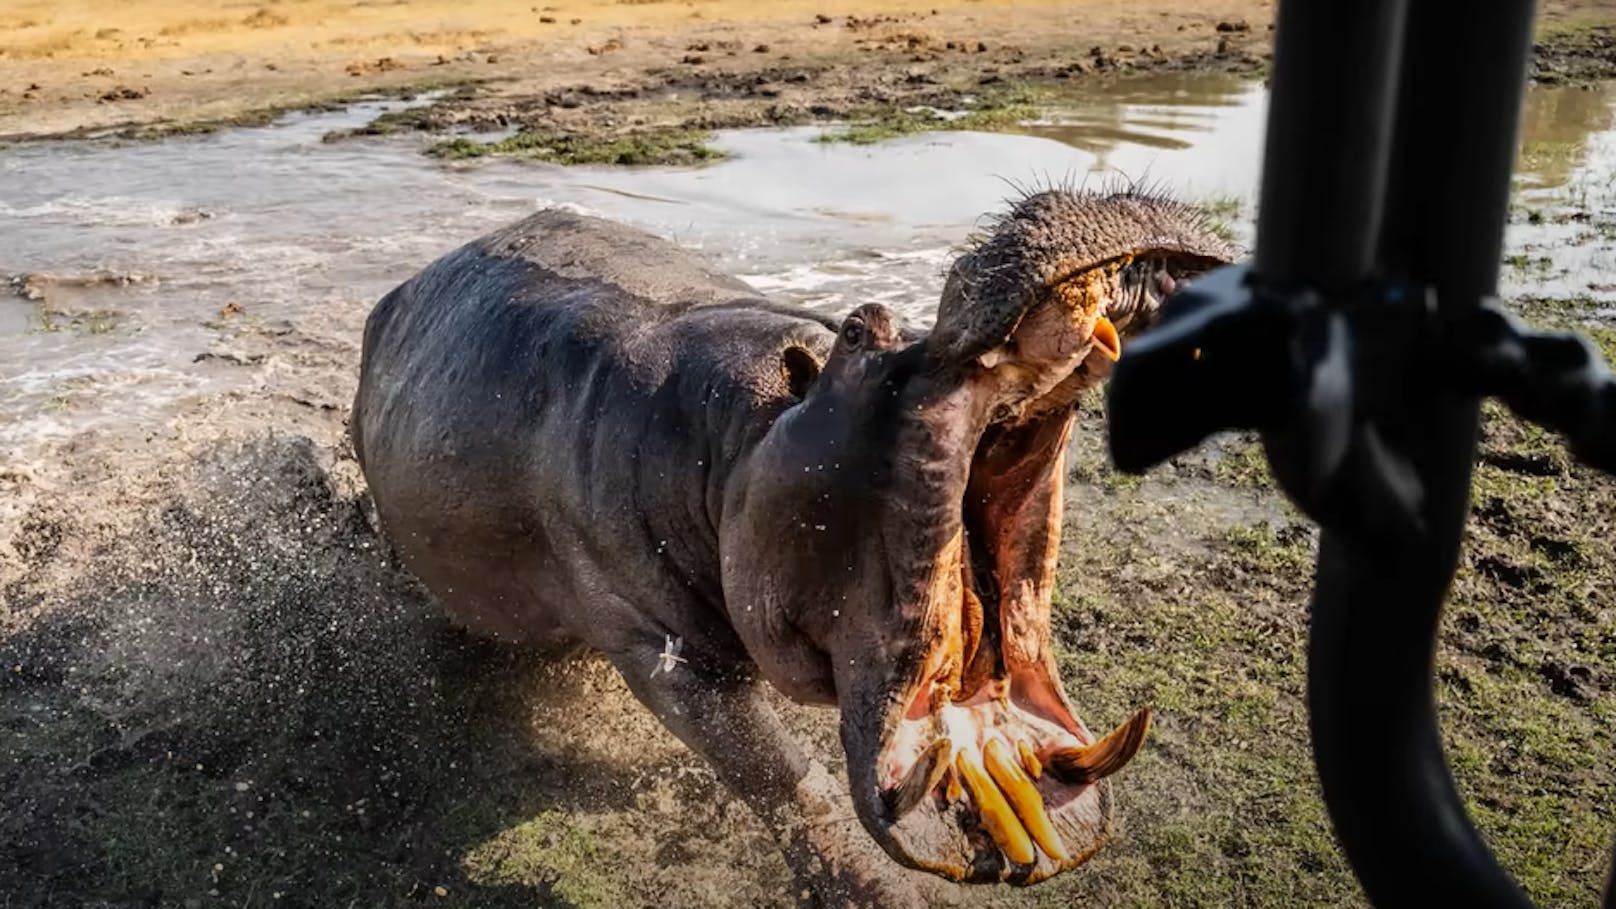 "Film einfach weiter" – Nilpferd beißt Loch ins Auto